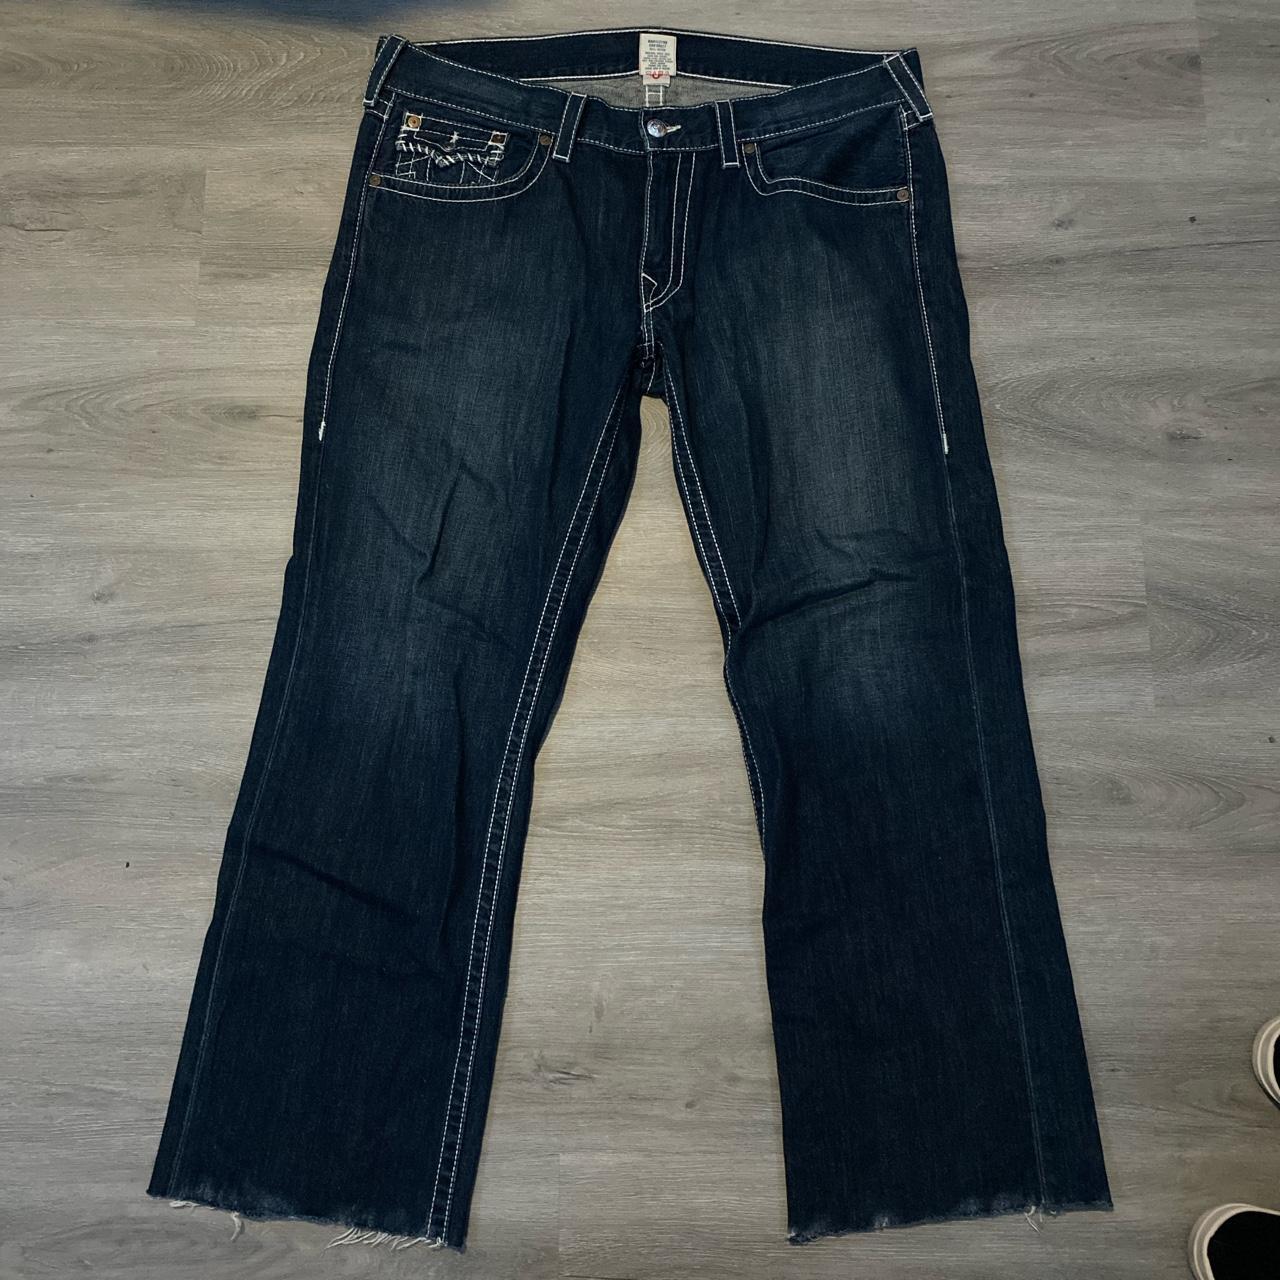 Dark Blue True Religion Jeans With White Stitching -... - Depop